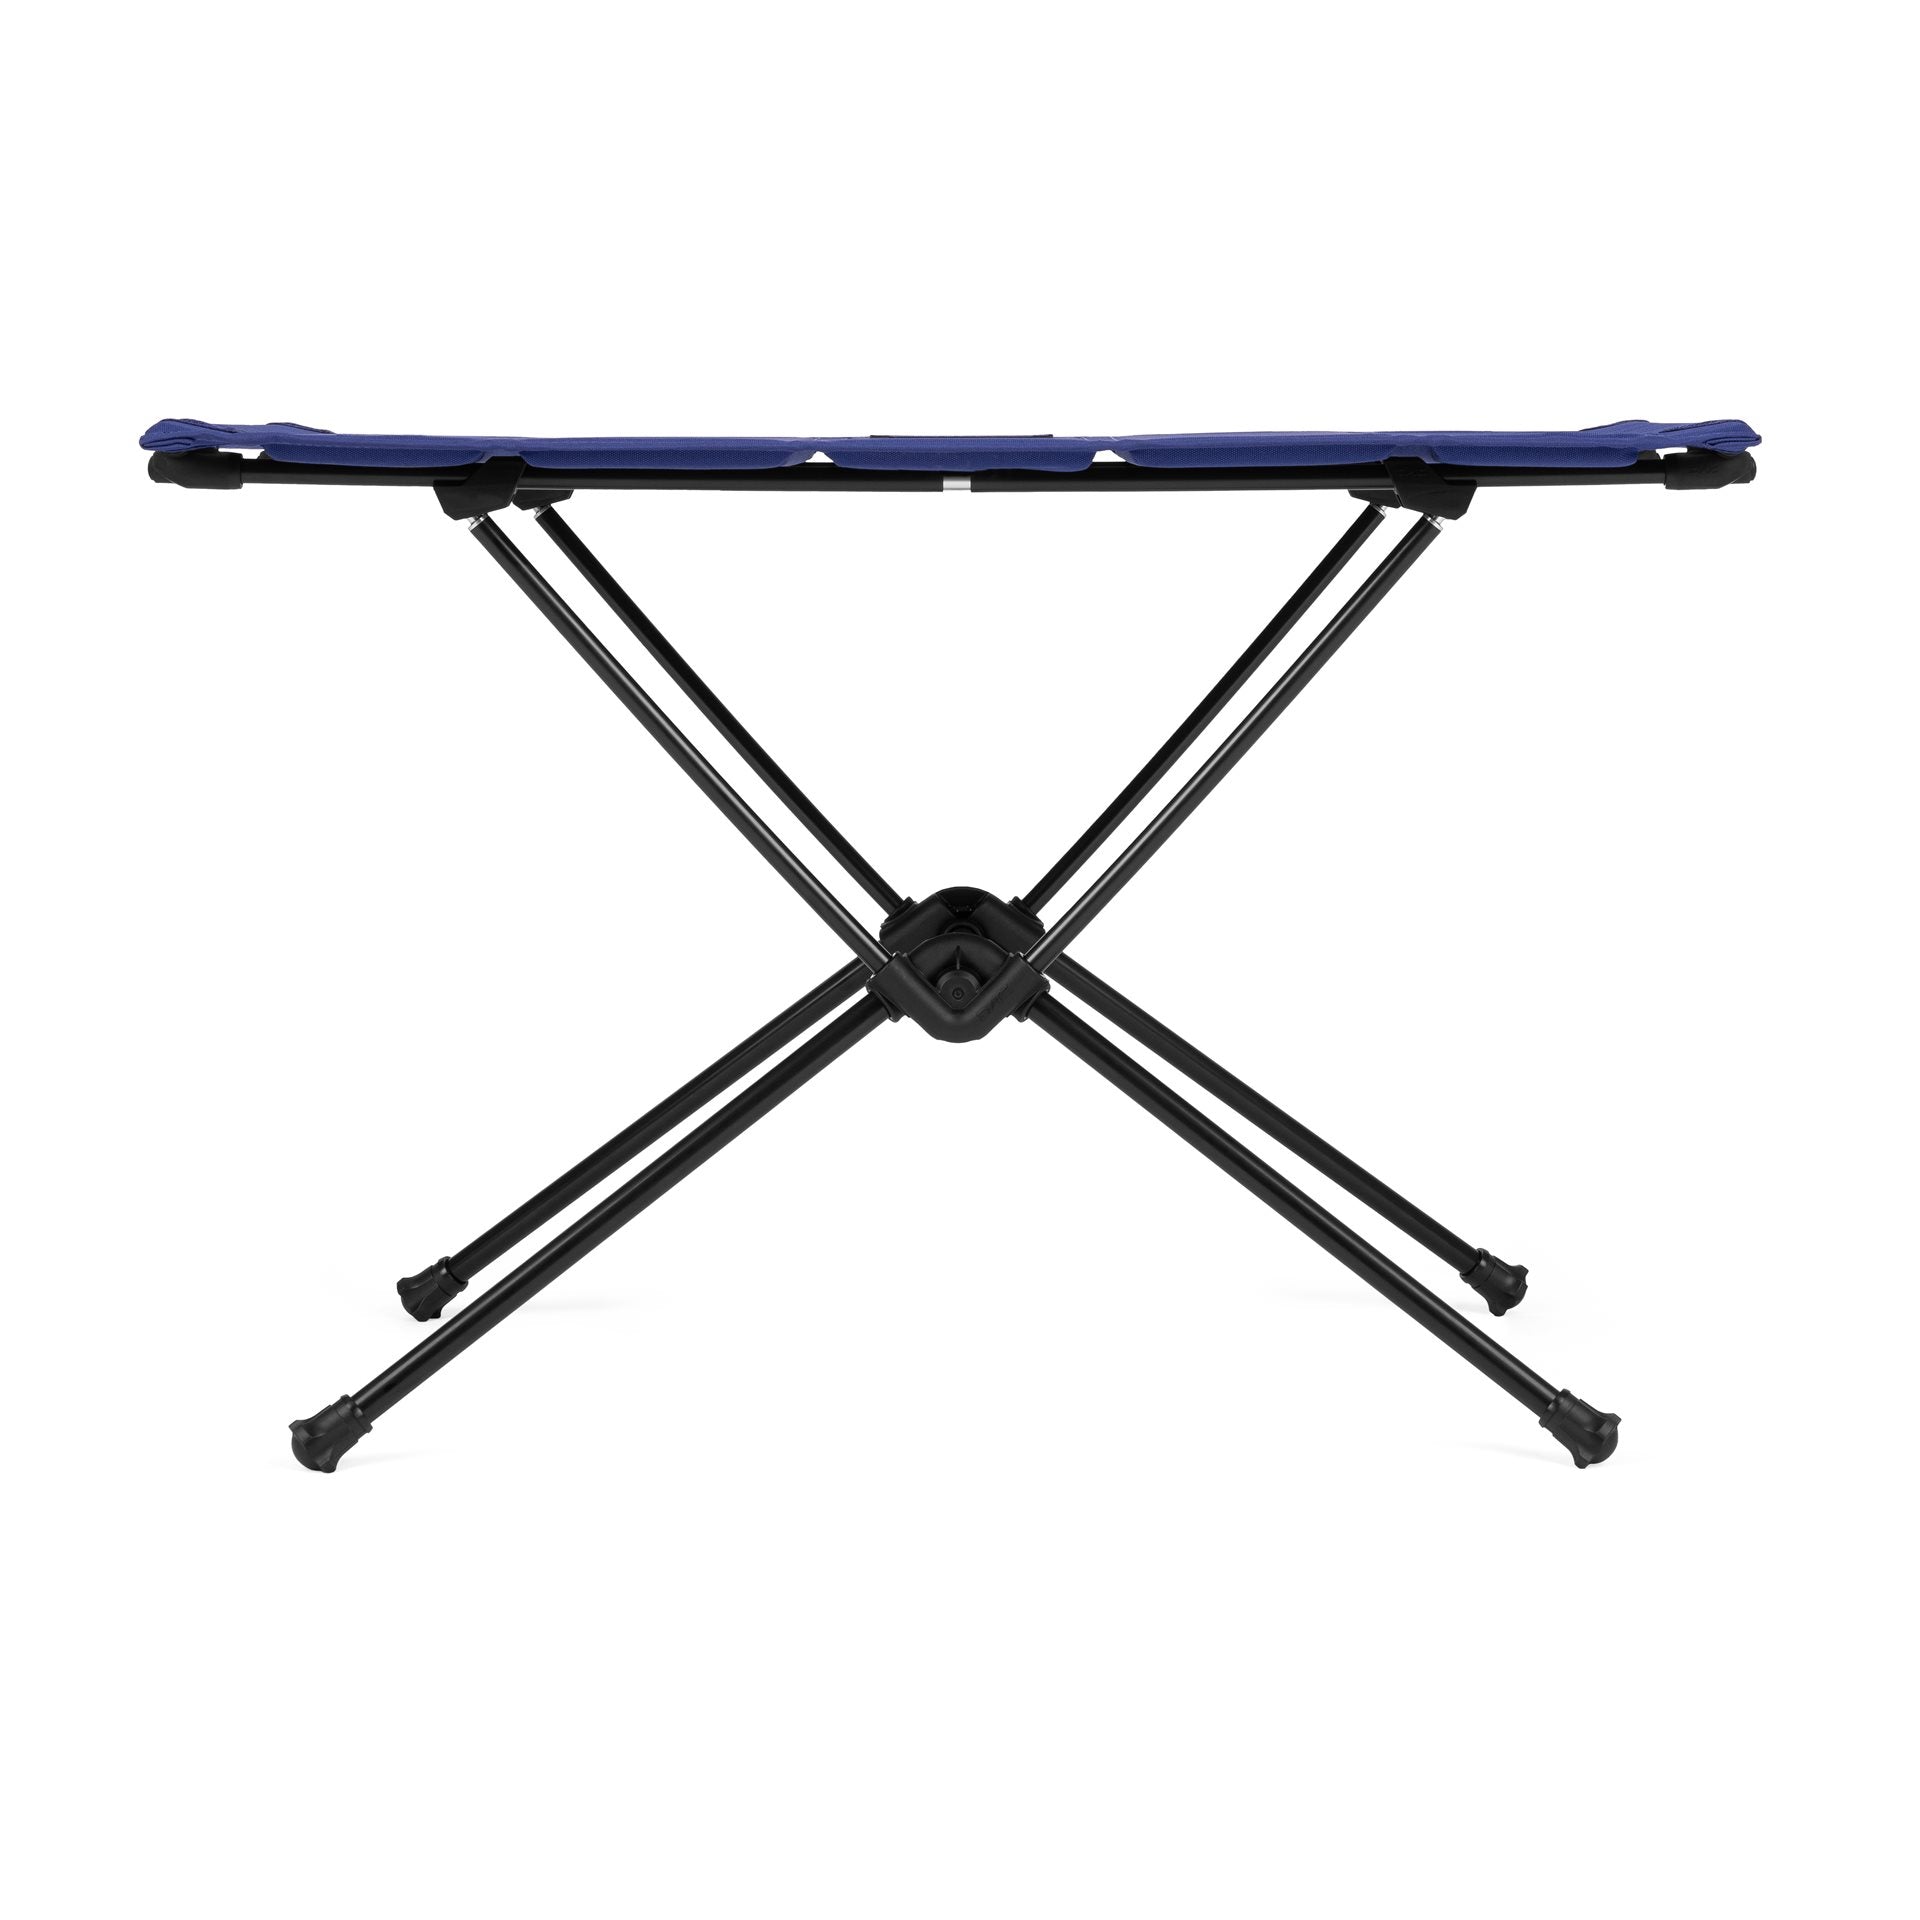 Helinox Table One  Hard Top - Kampeertafel Medium- Cobalt Campingtafel - Reisartikelen-nl